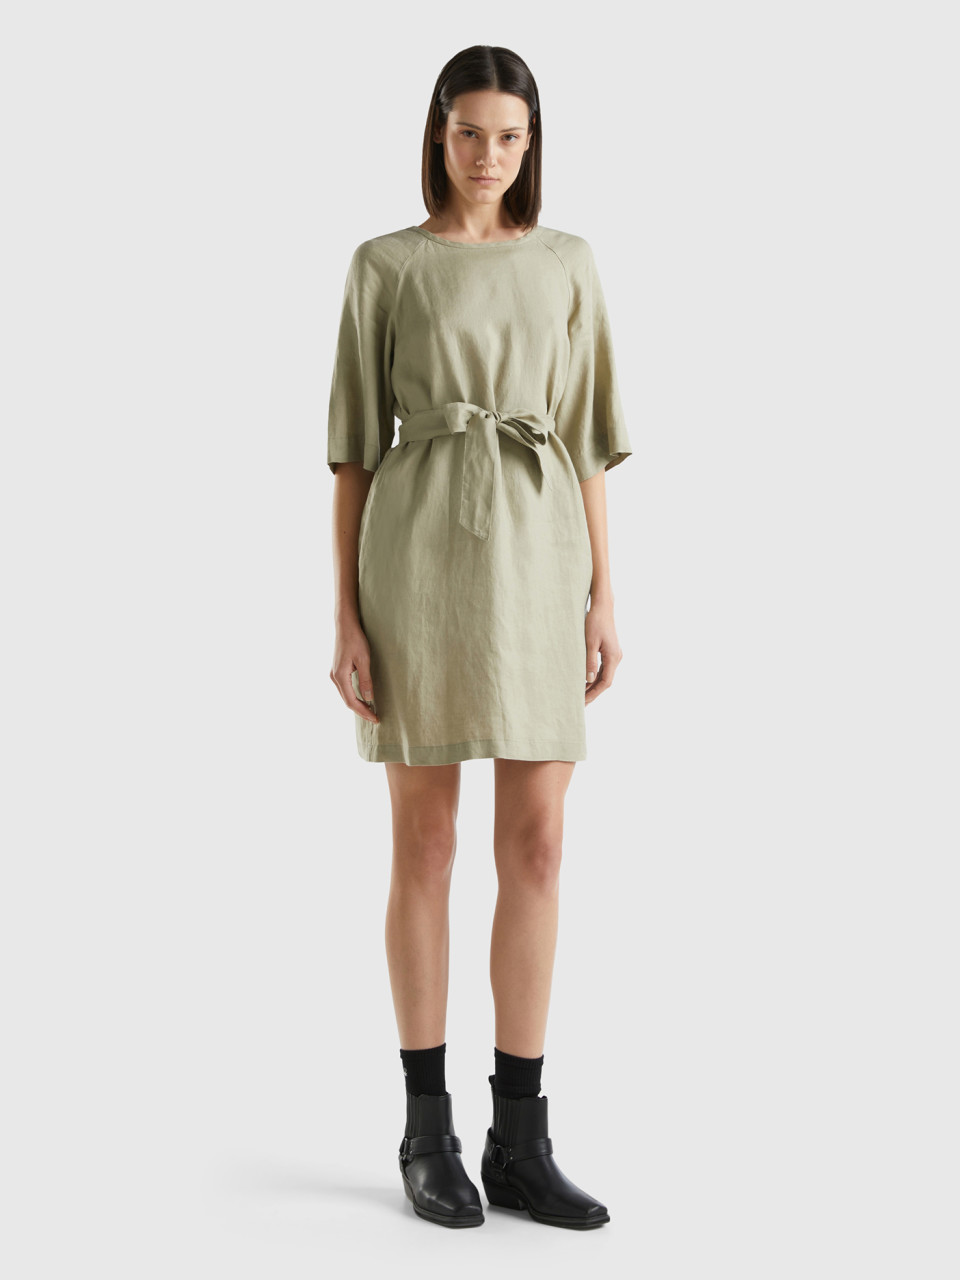 Benetton, Short Dress In Pure Linen, Light Green, Women